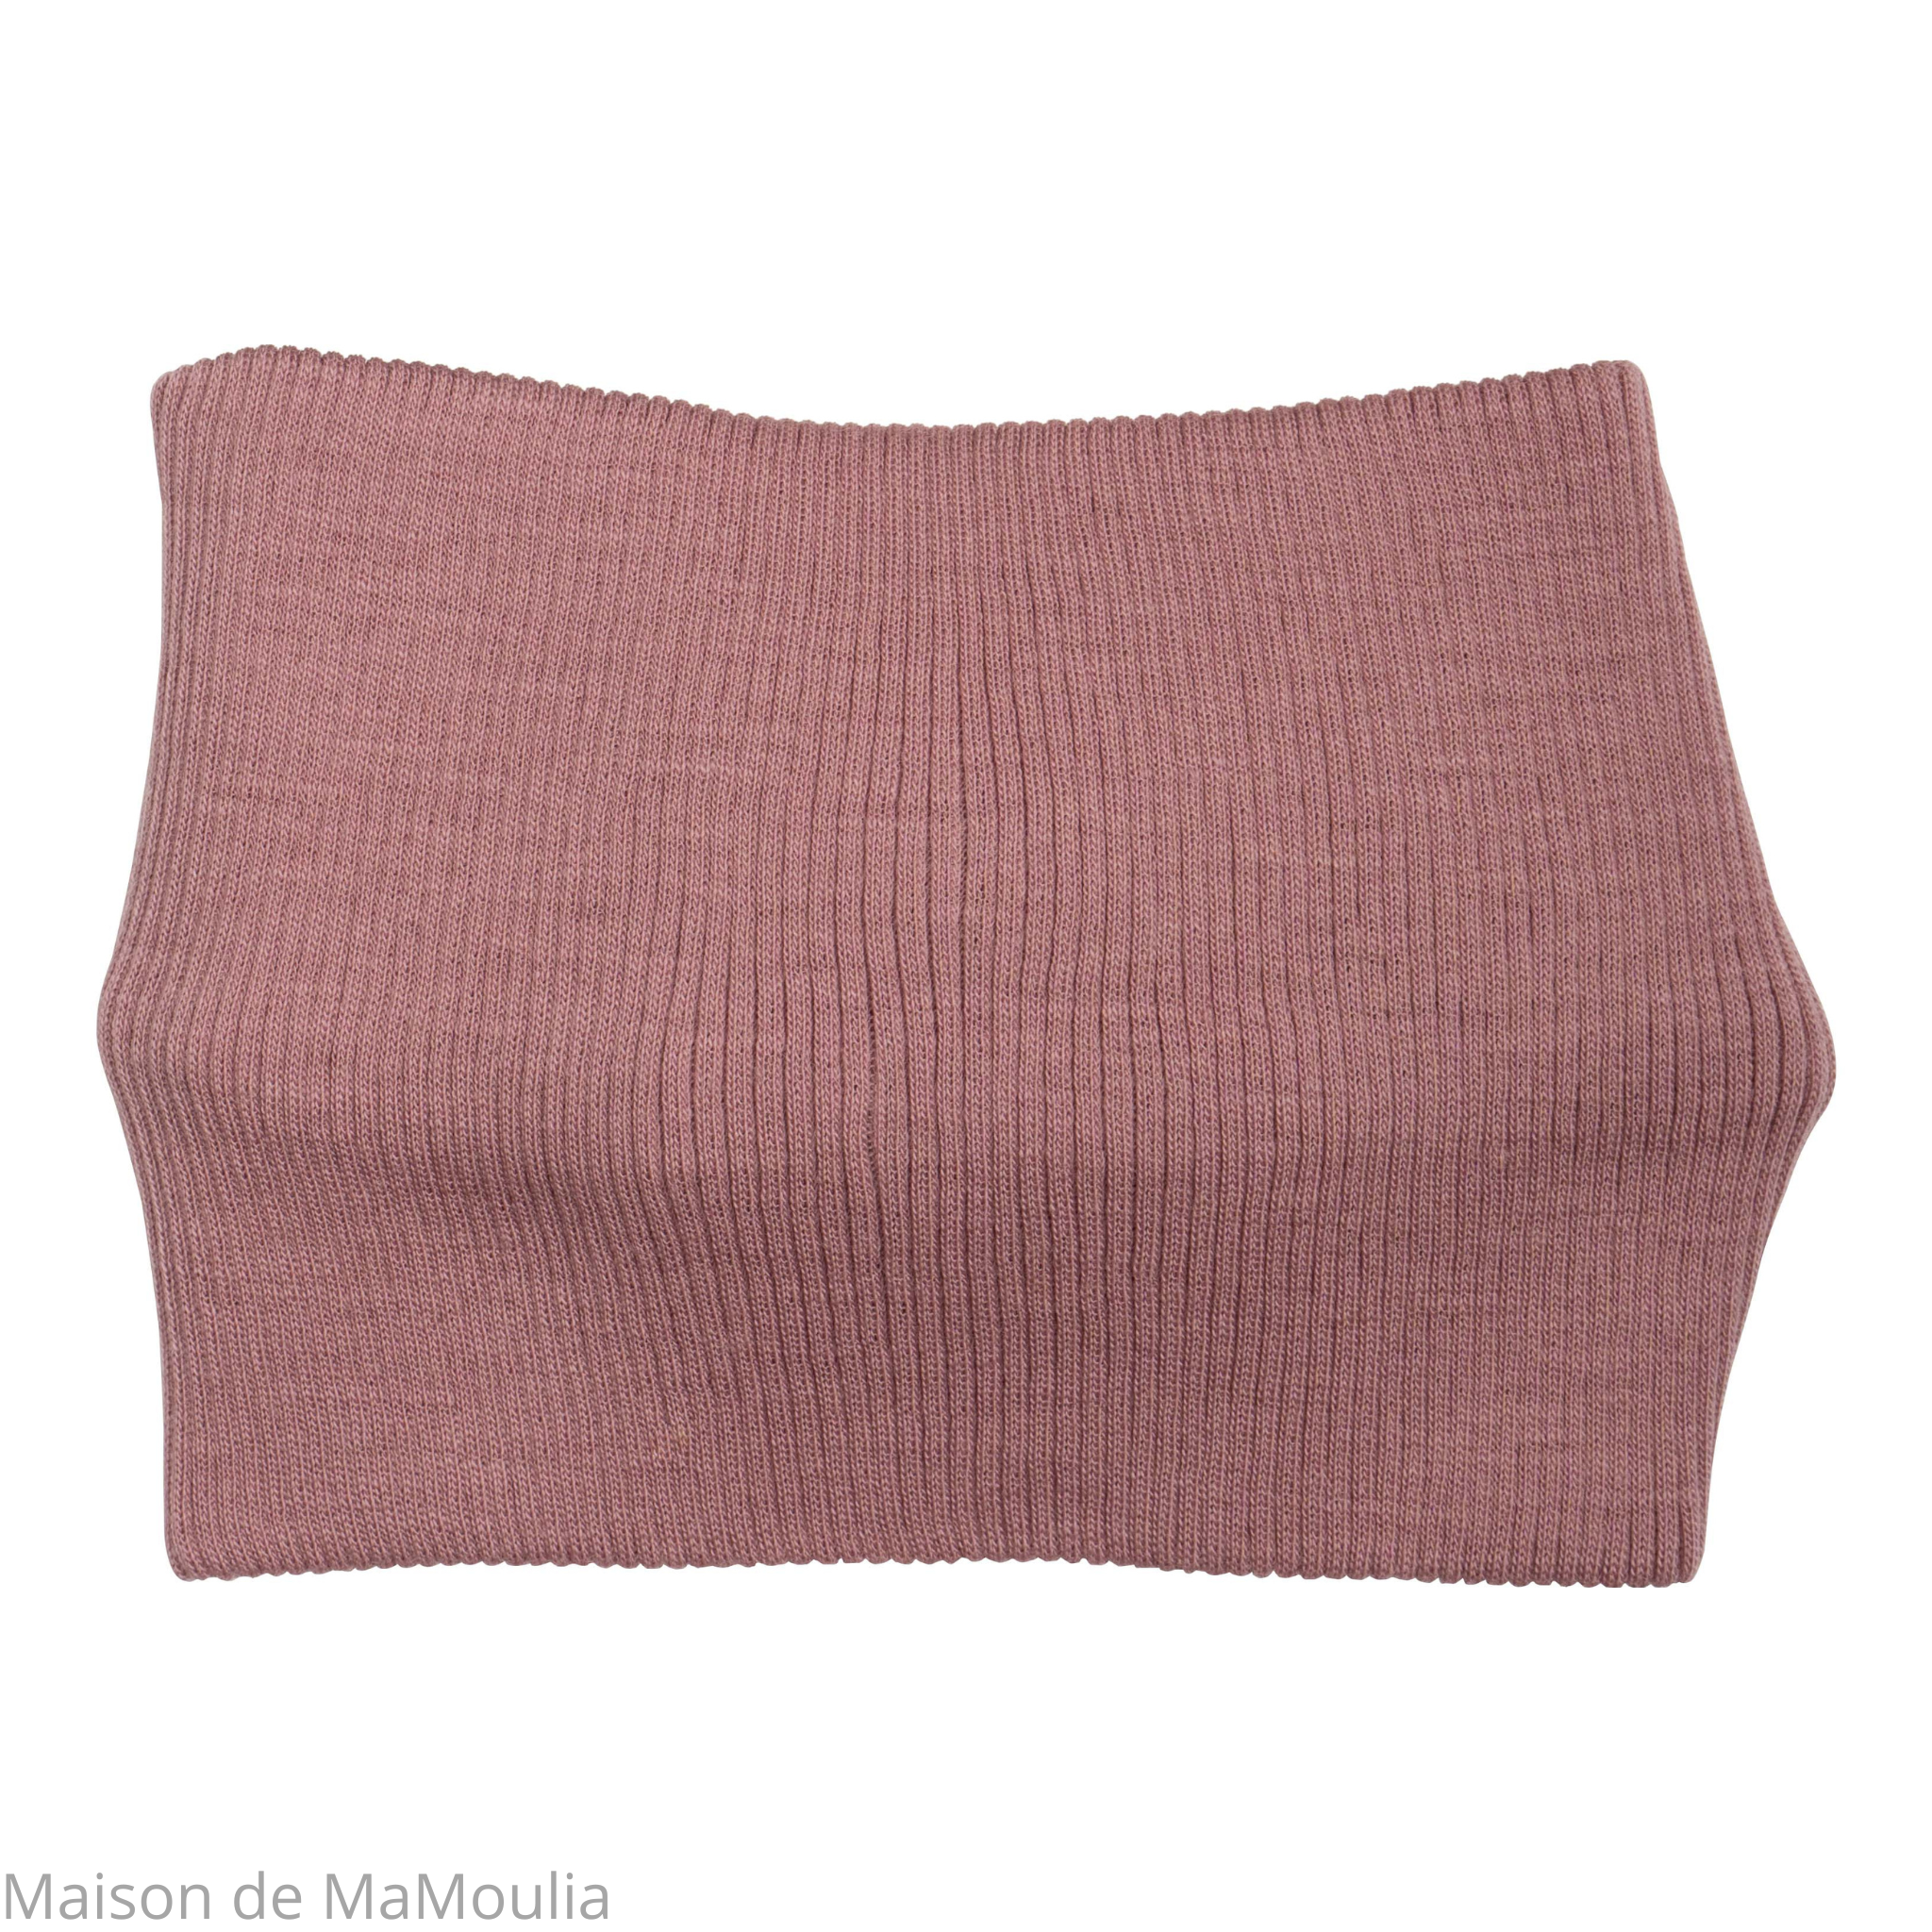 bandeau-tour-de-tete-enfant-laine-merinos-minimalisma-maison-de-mamoulia-vieux-rose